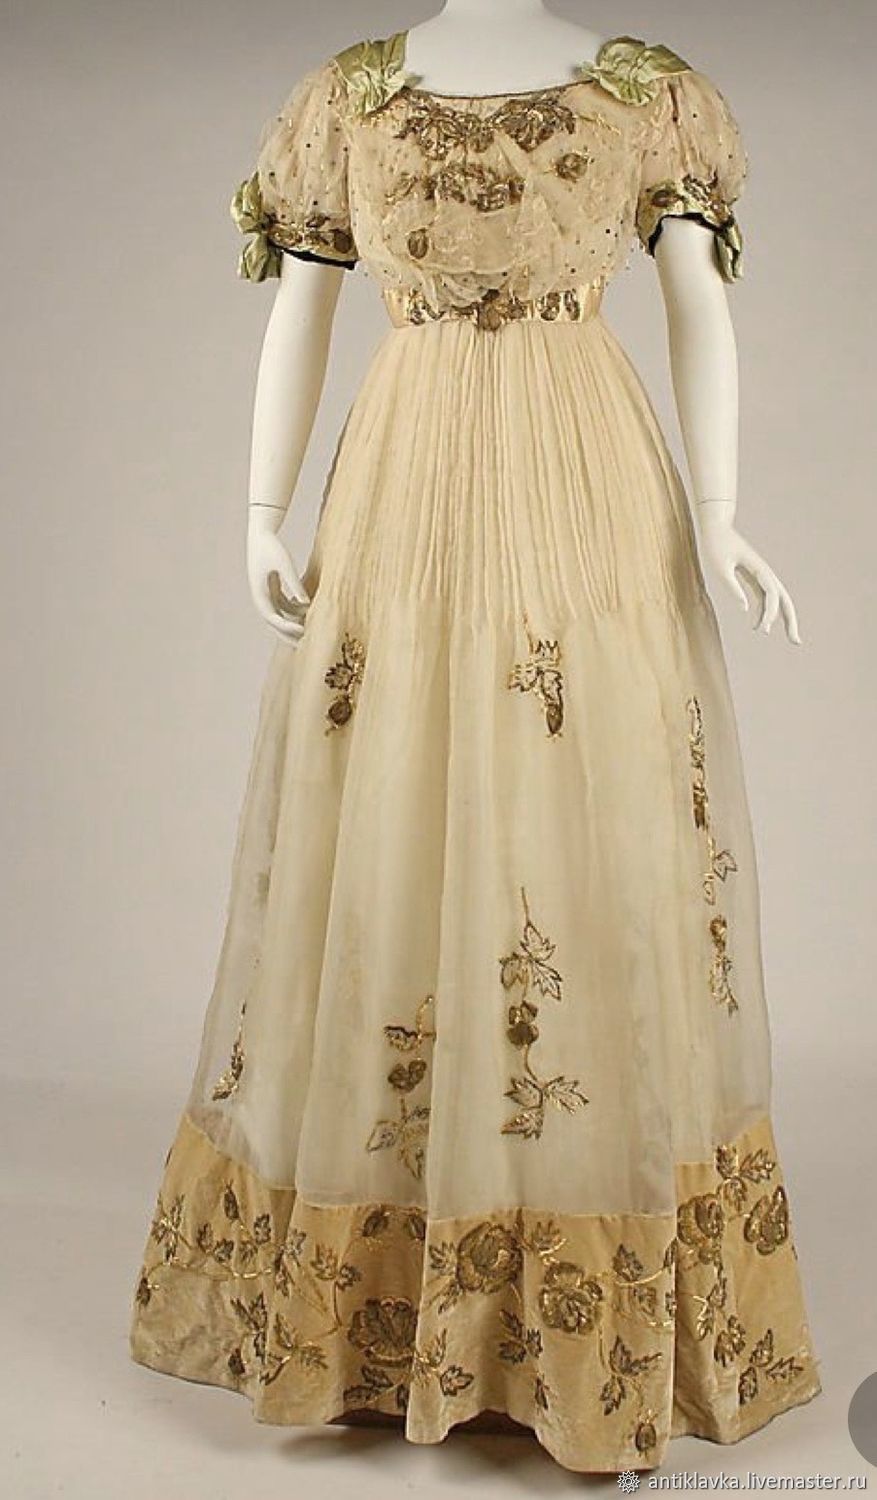 Платье стиль Ампир 19-20 века